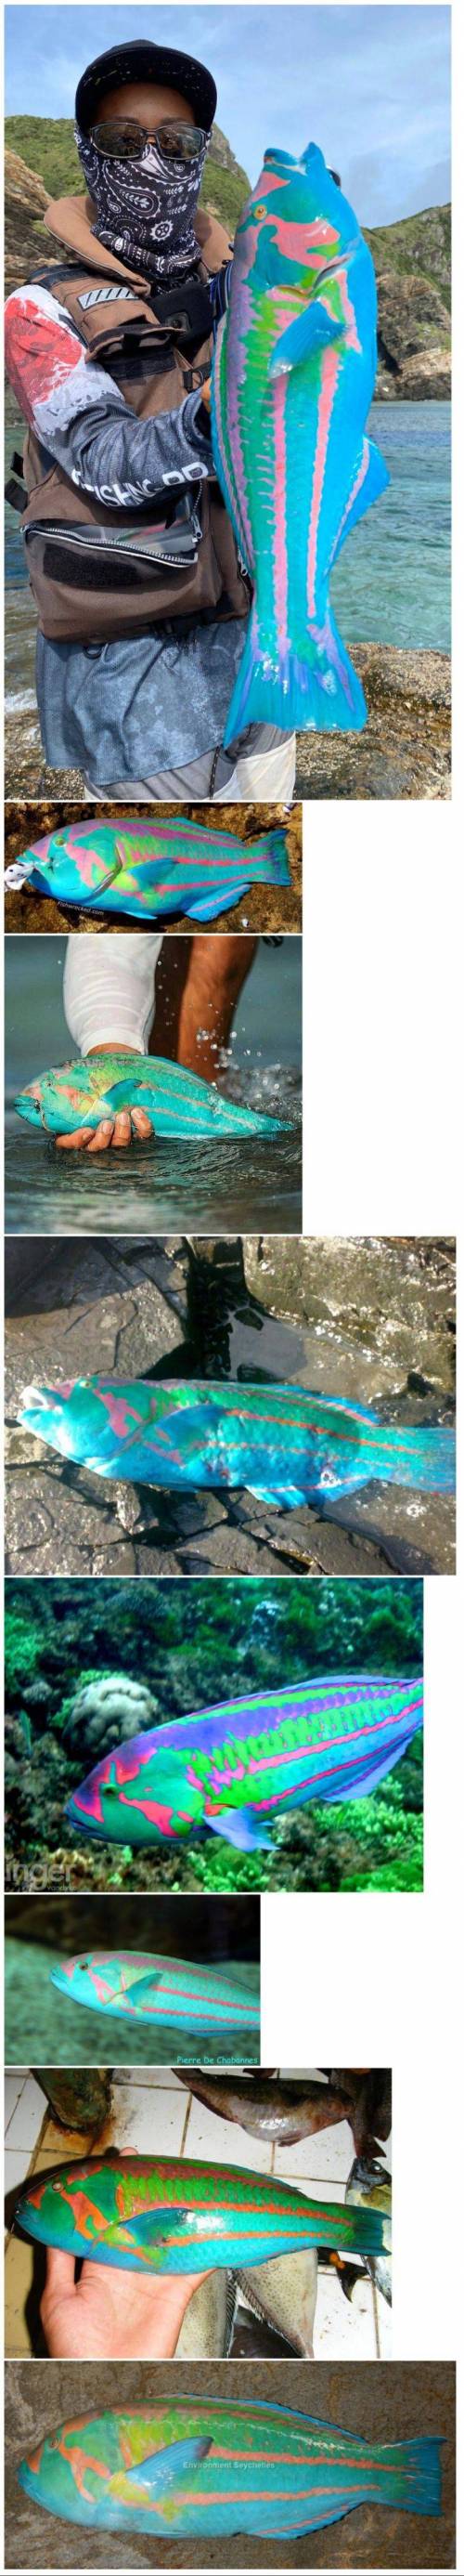 특이한 색의 물고기.jpg